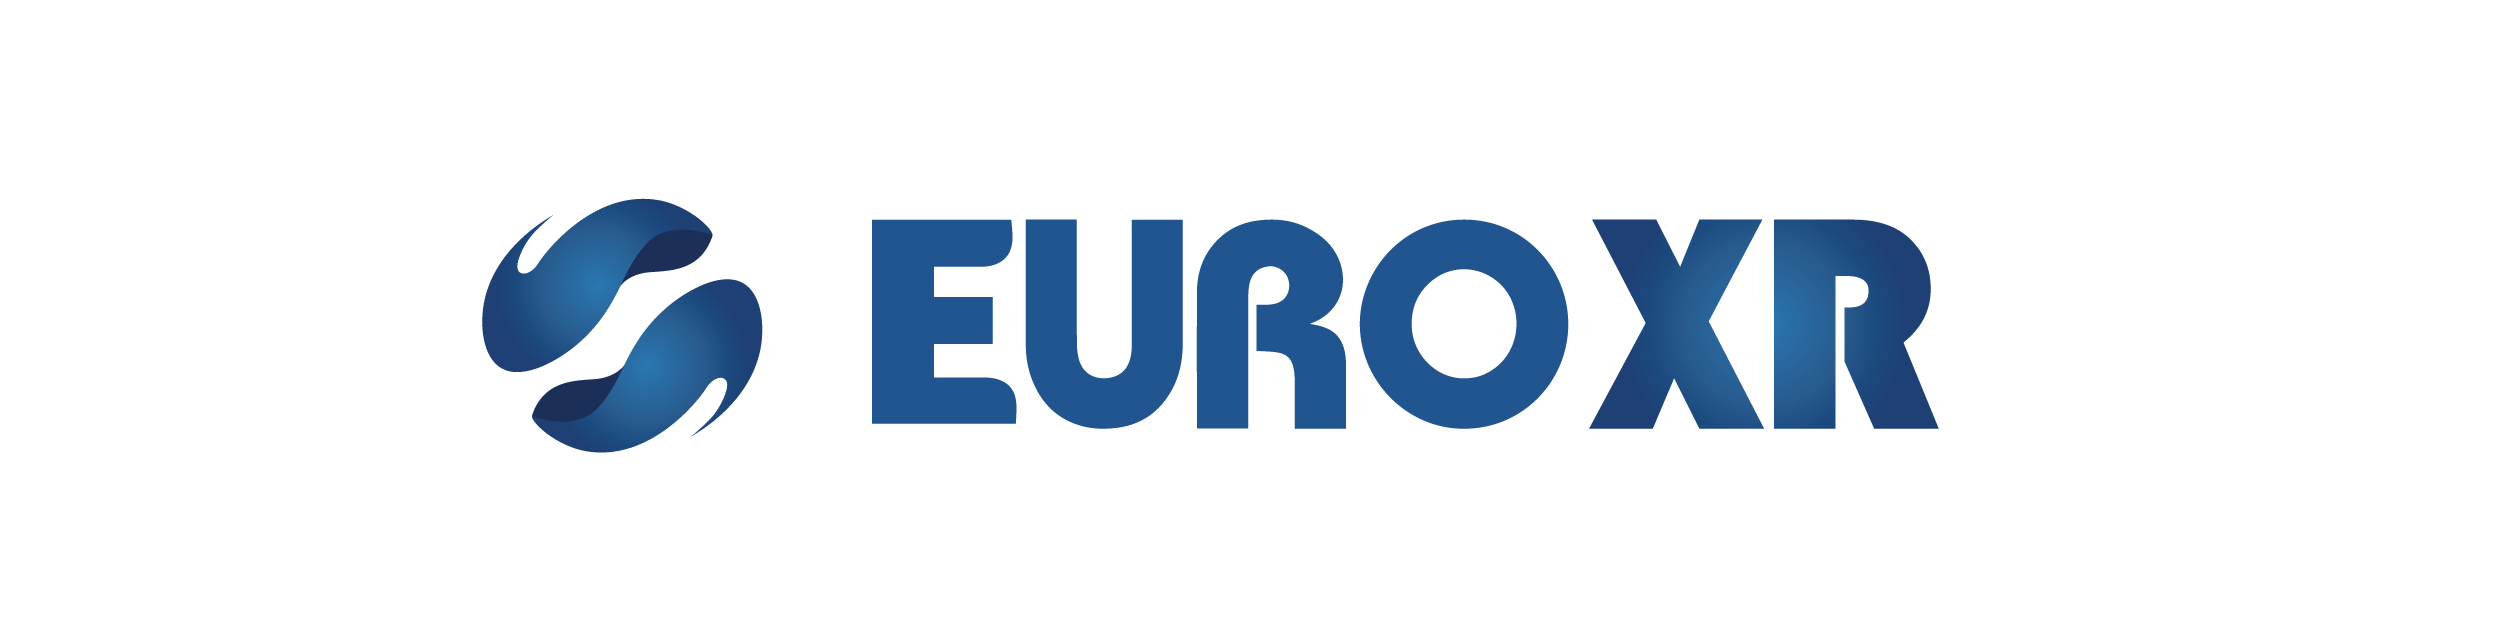 EUROXR ASSOCIATION